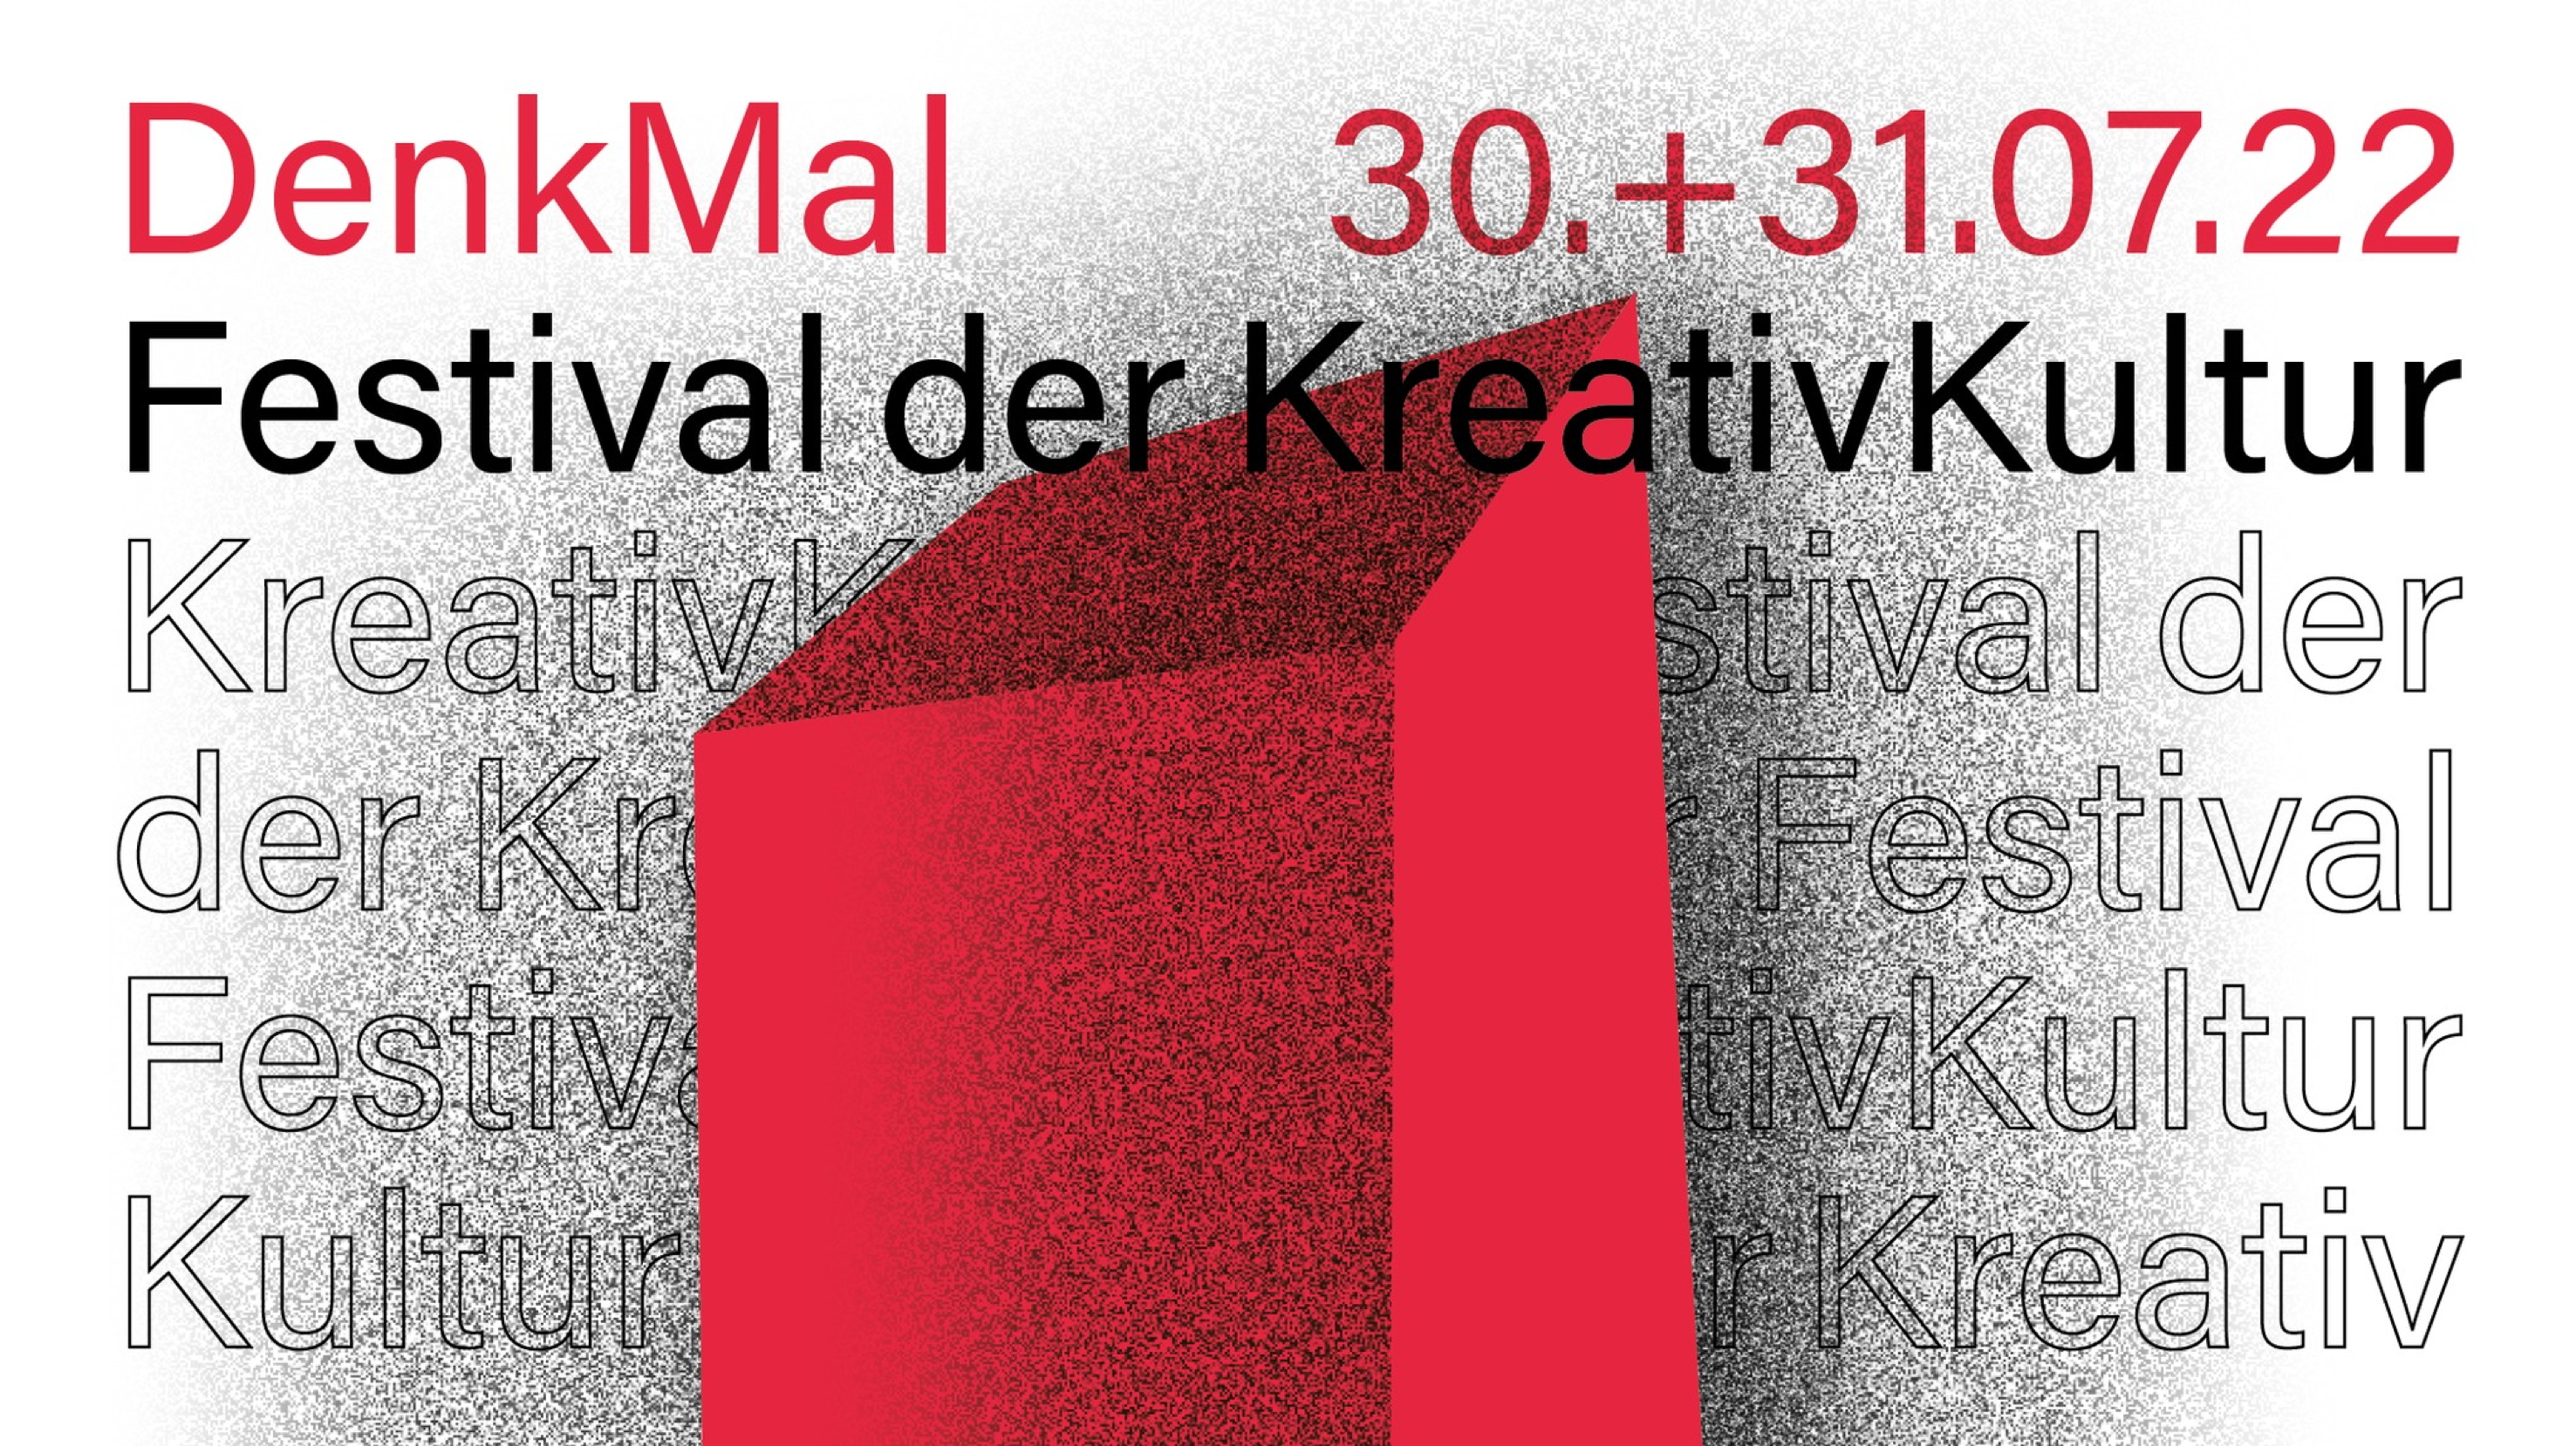 Zwei Tage full immersion in Kunst und Kultur: Das DenkMal Festival findet am 30. und 31. Juli 2022 auf dem Gelände der Ex-Drusus-Kaserne in Schlanders statt.